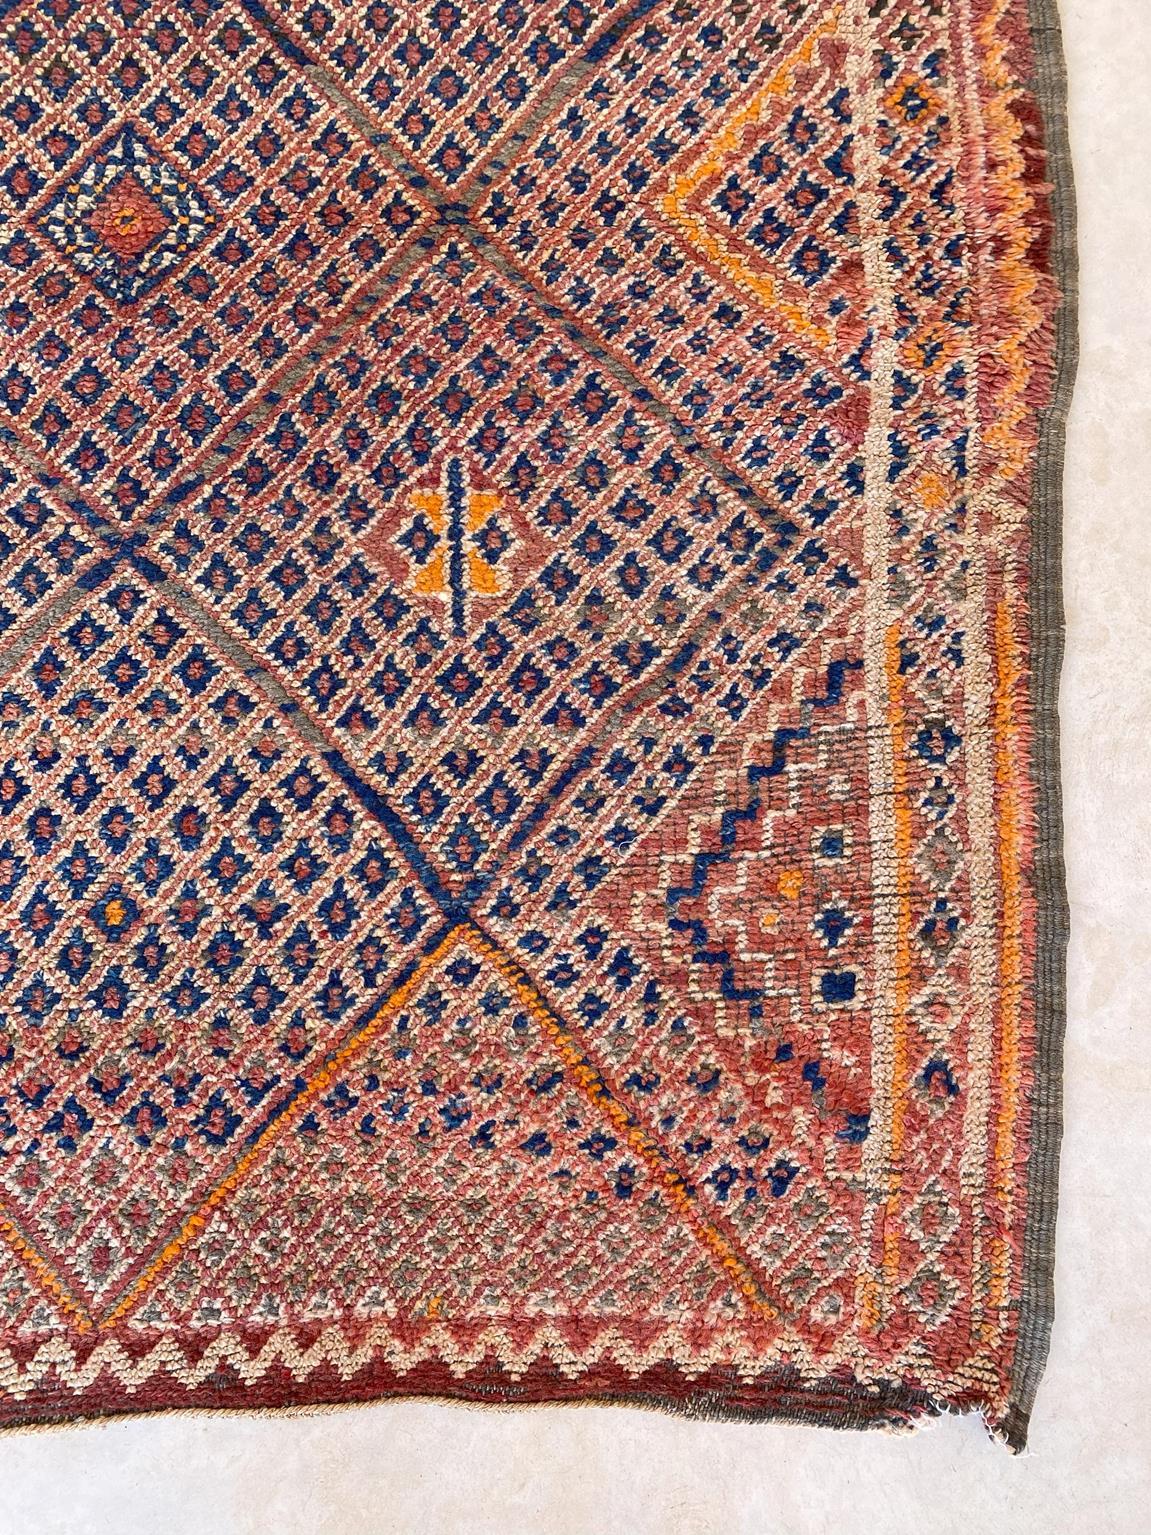 Vintage Beni Mguild rug - Orange/terracotta/blue - 6.1x9.8feet / 186x298cm For Sale 2